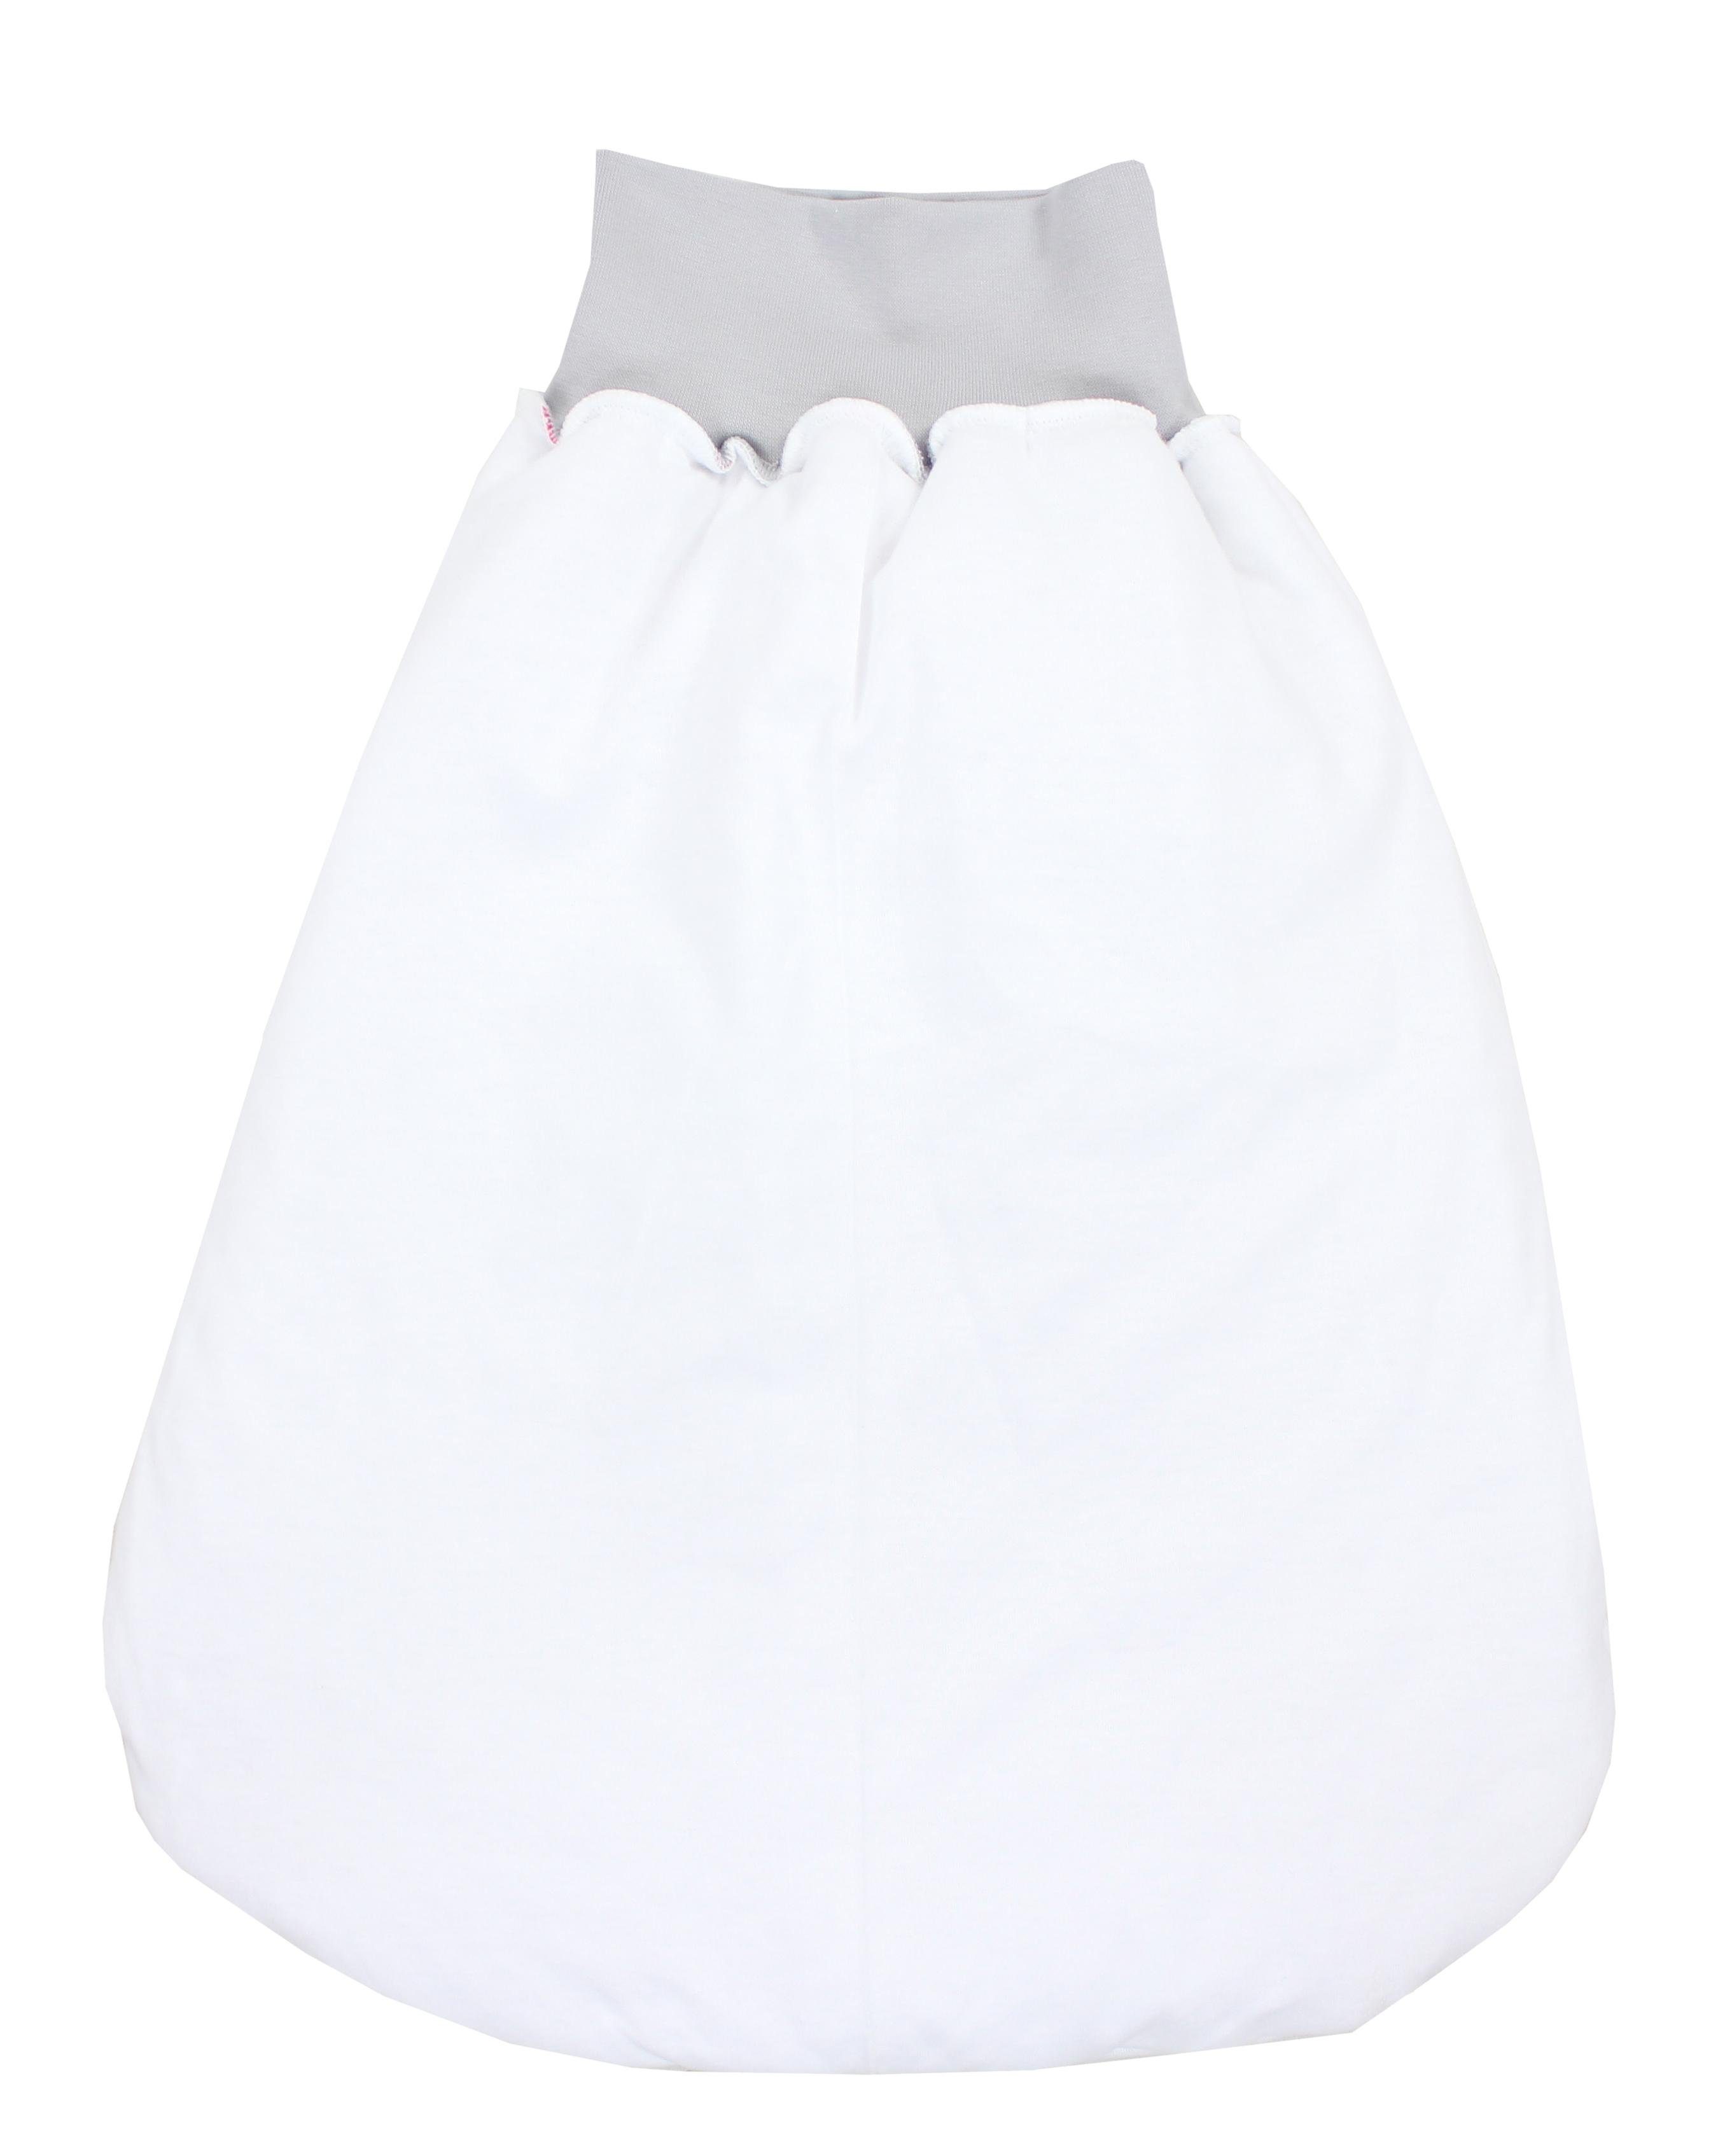 TupTam Babyschlafsack TupTam Sterne Bund Unisex Grau Strampelsack mit Weiße breitem Wattiert Baby 